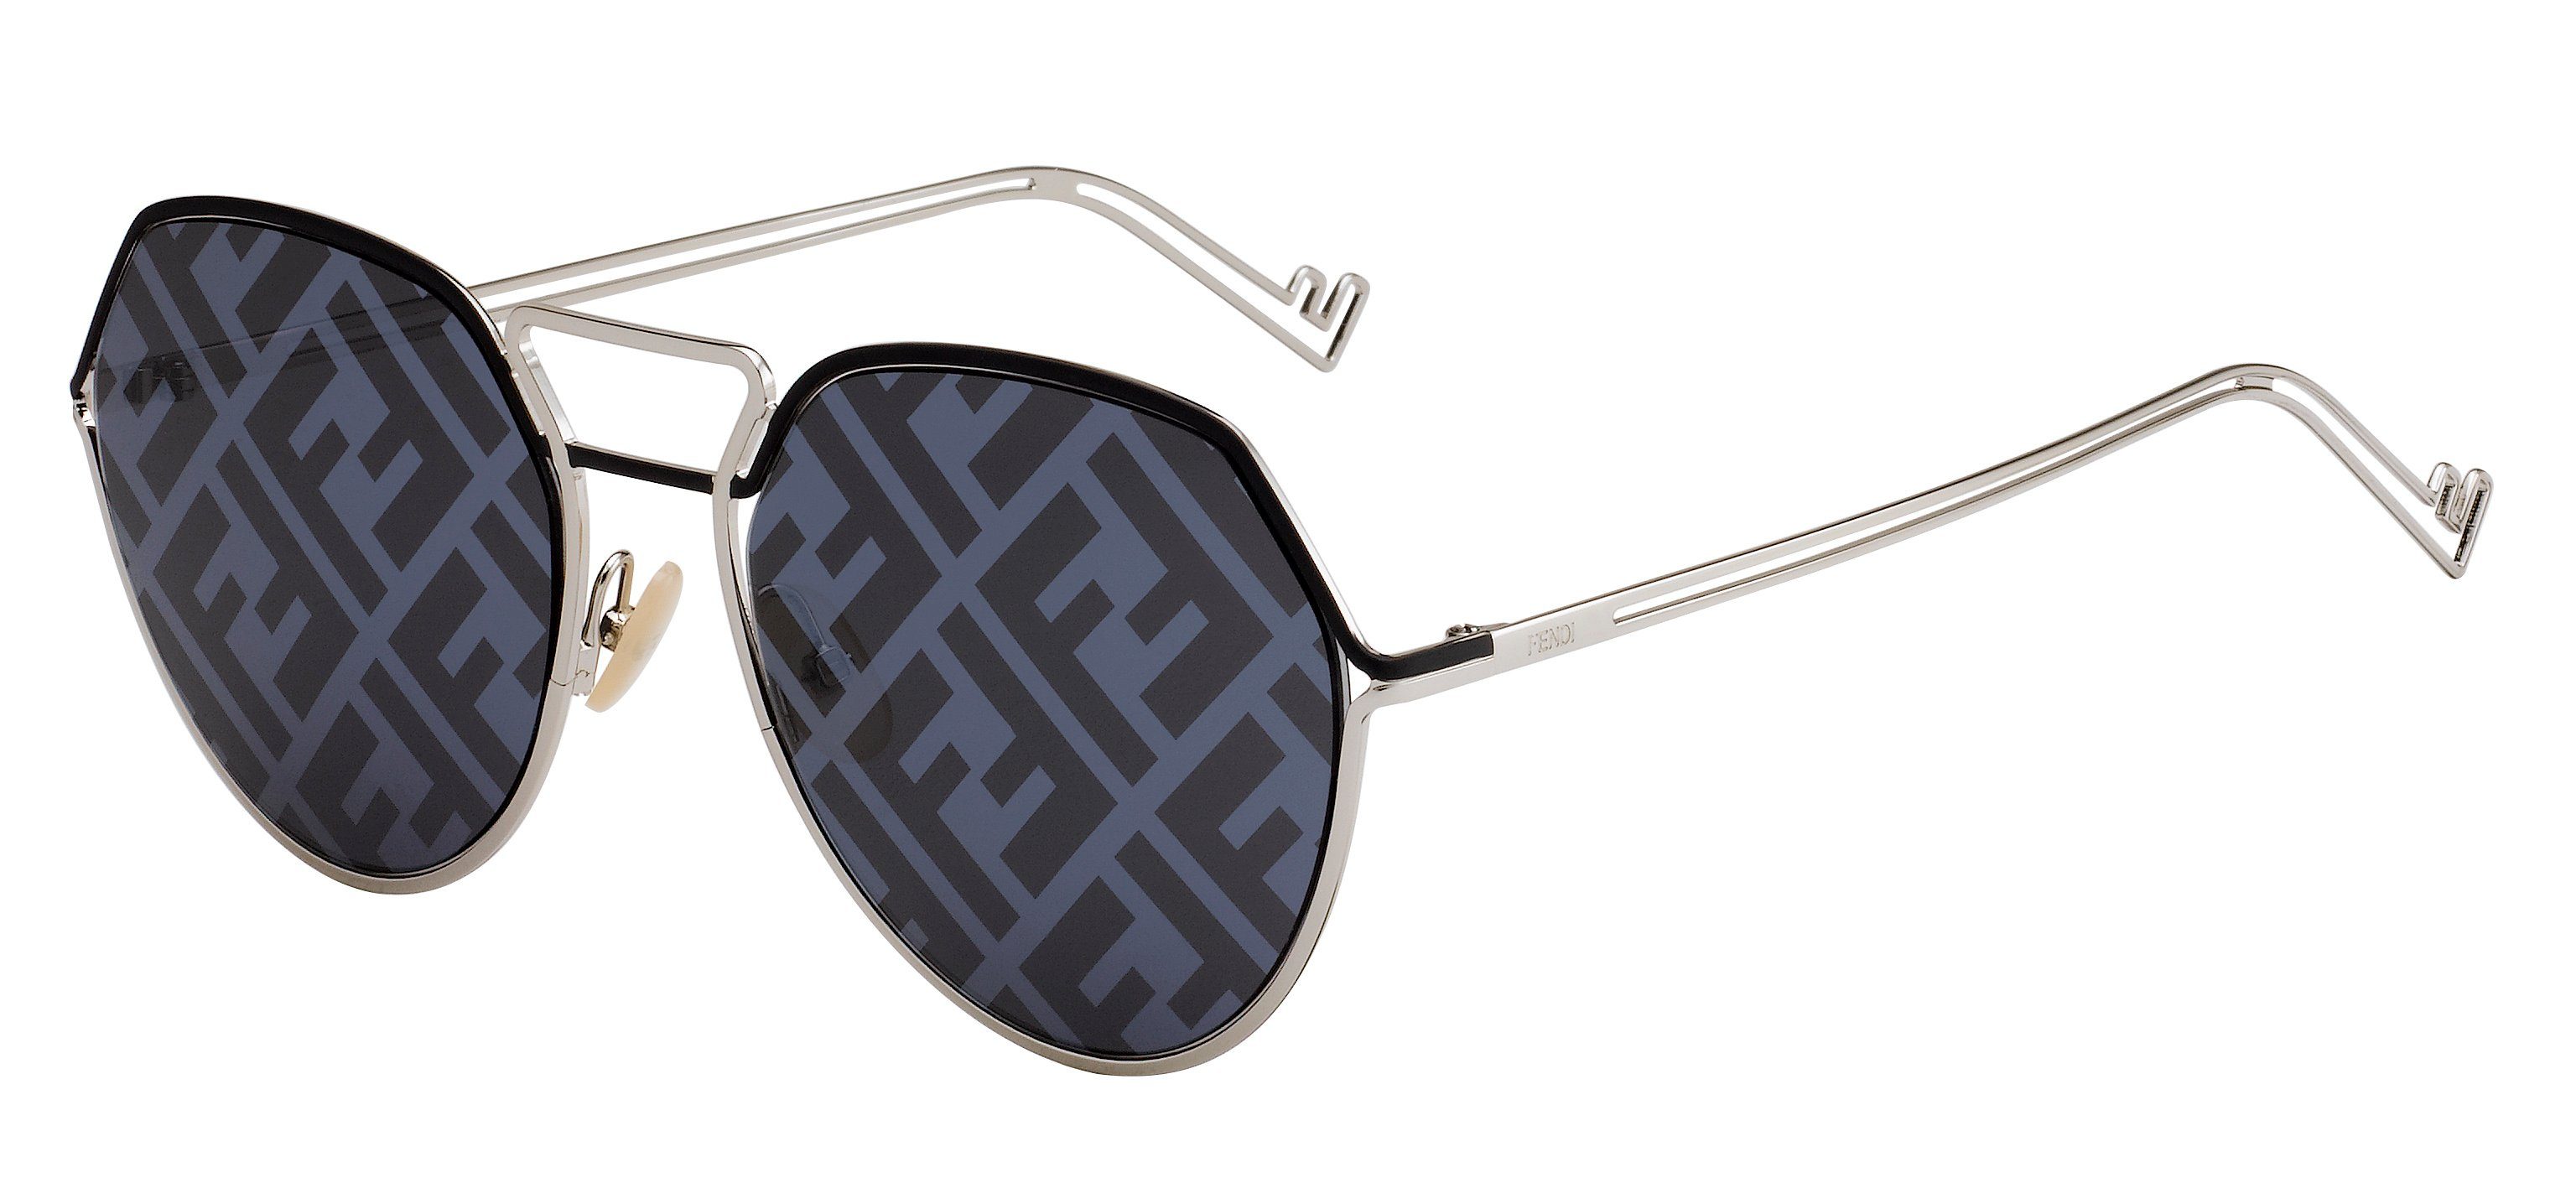 FENDI Sonnenbrille »FF M0073/S« online kaufen | OTTO